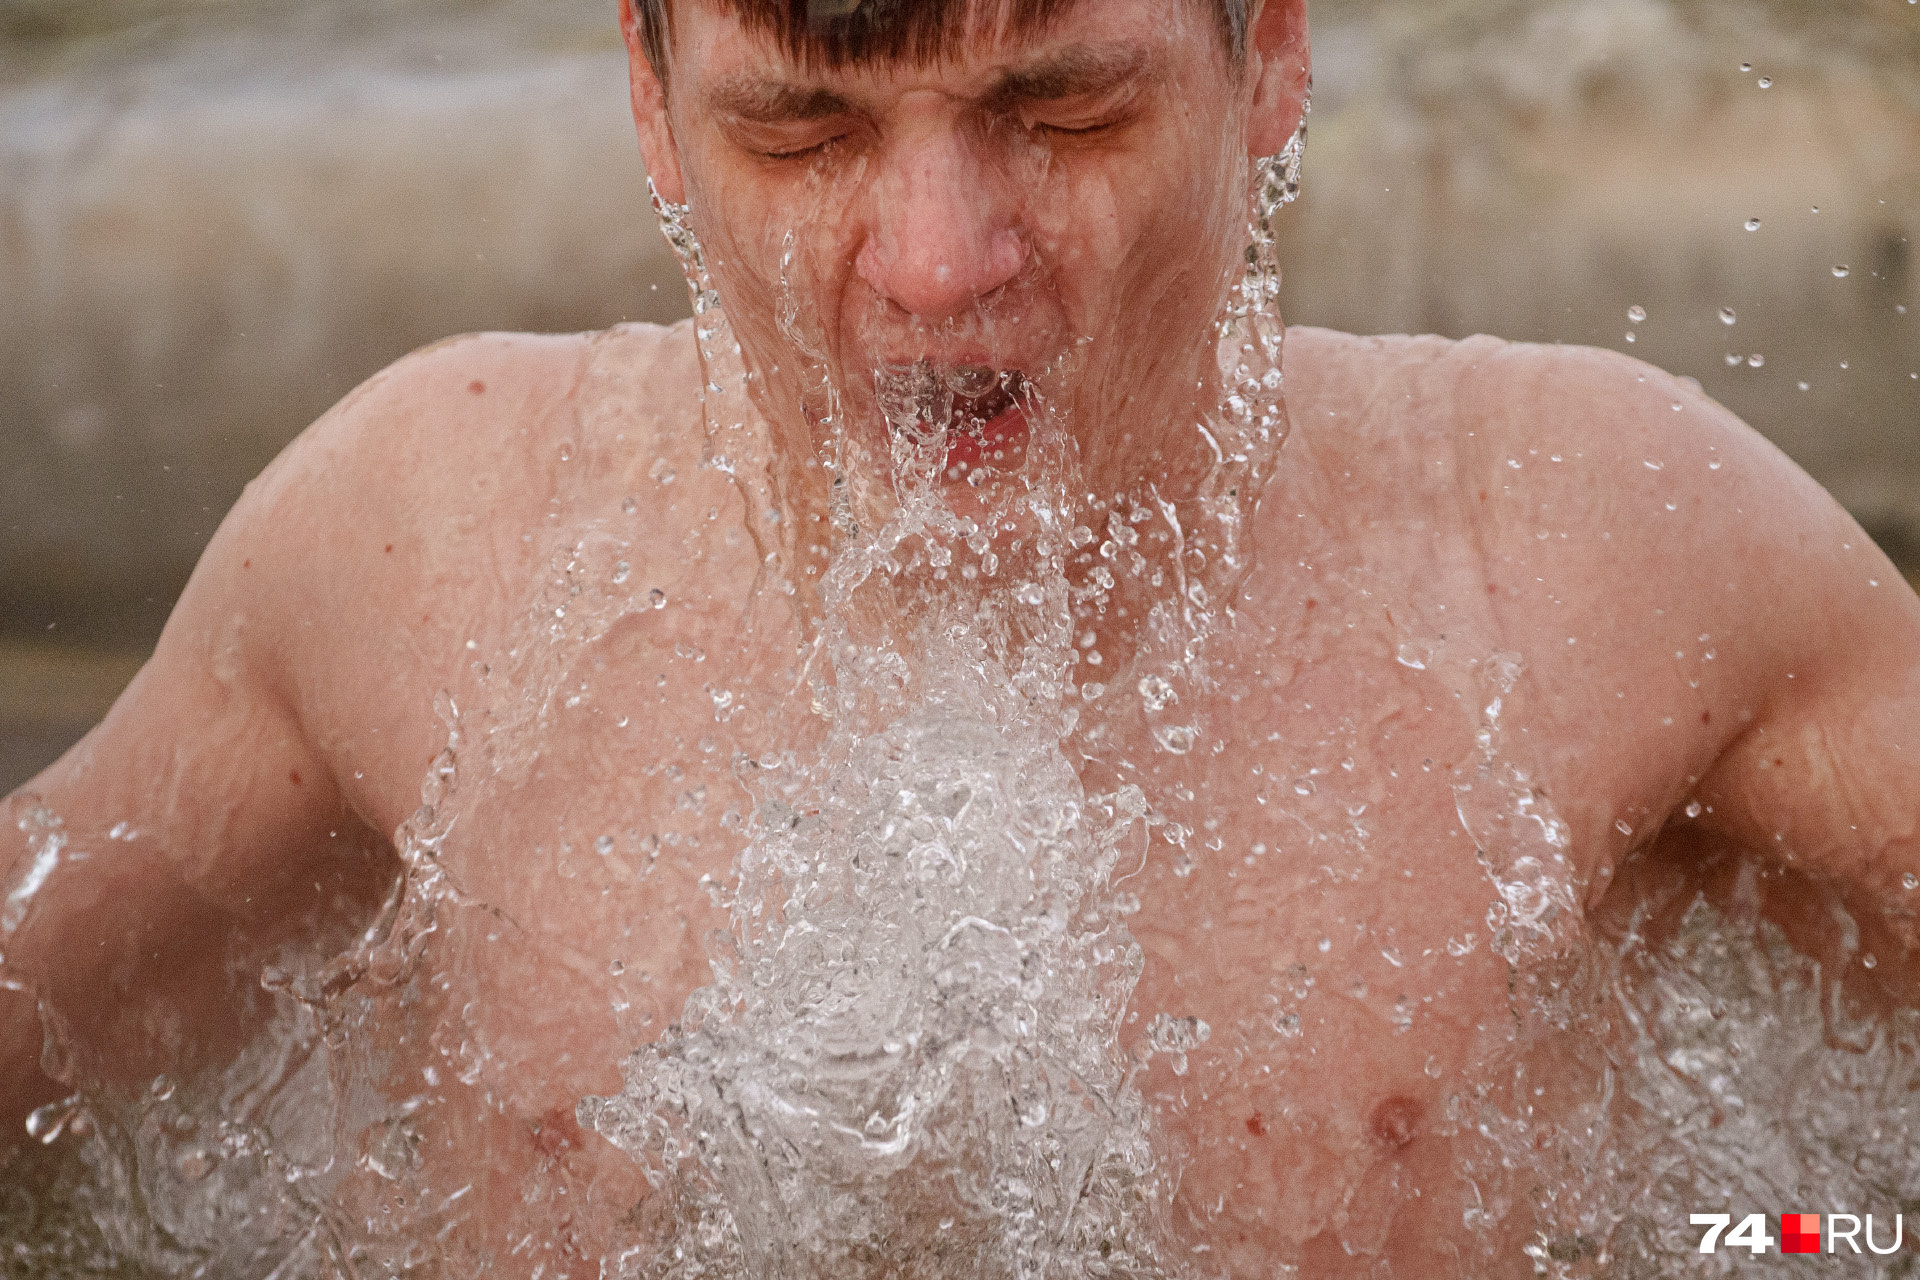 Мощный выдох — и вот уже чувствуется очищающая сила крещенской воды